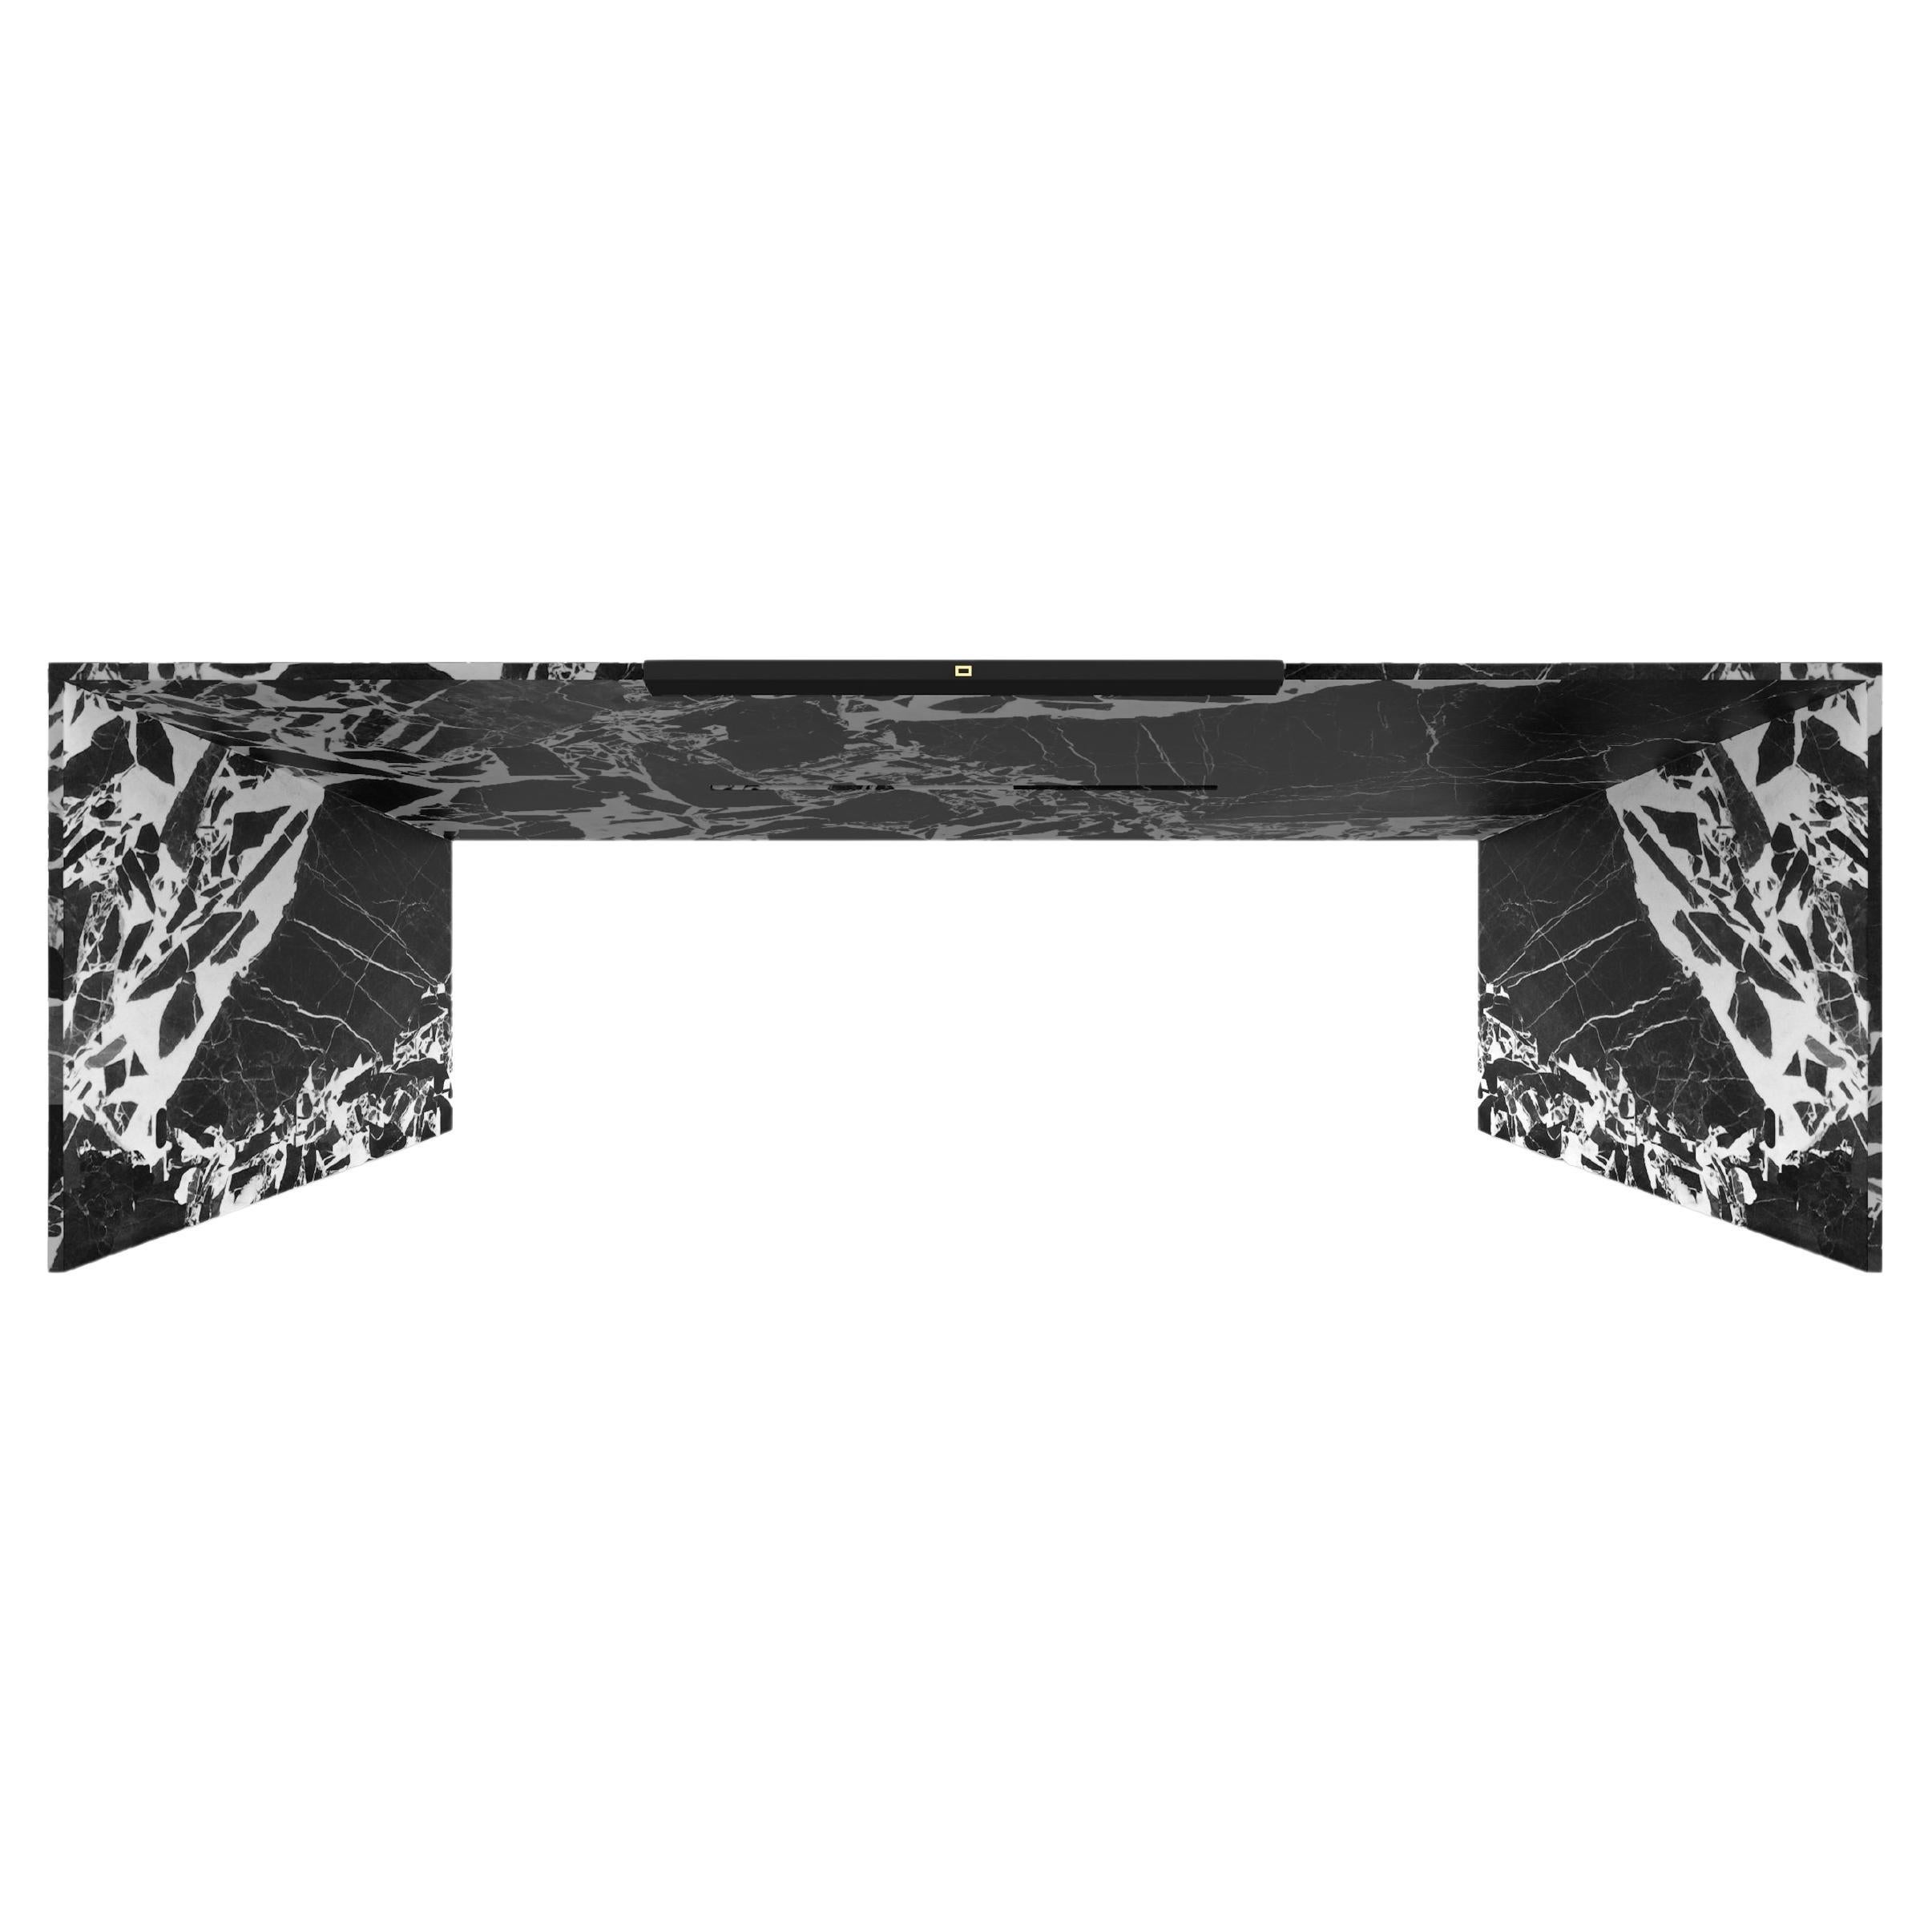 Schreibtisch, schwarzer Marmor, 225x75x75cm, dreieckiges Geheimfach, handgefertigt, pc1/1